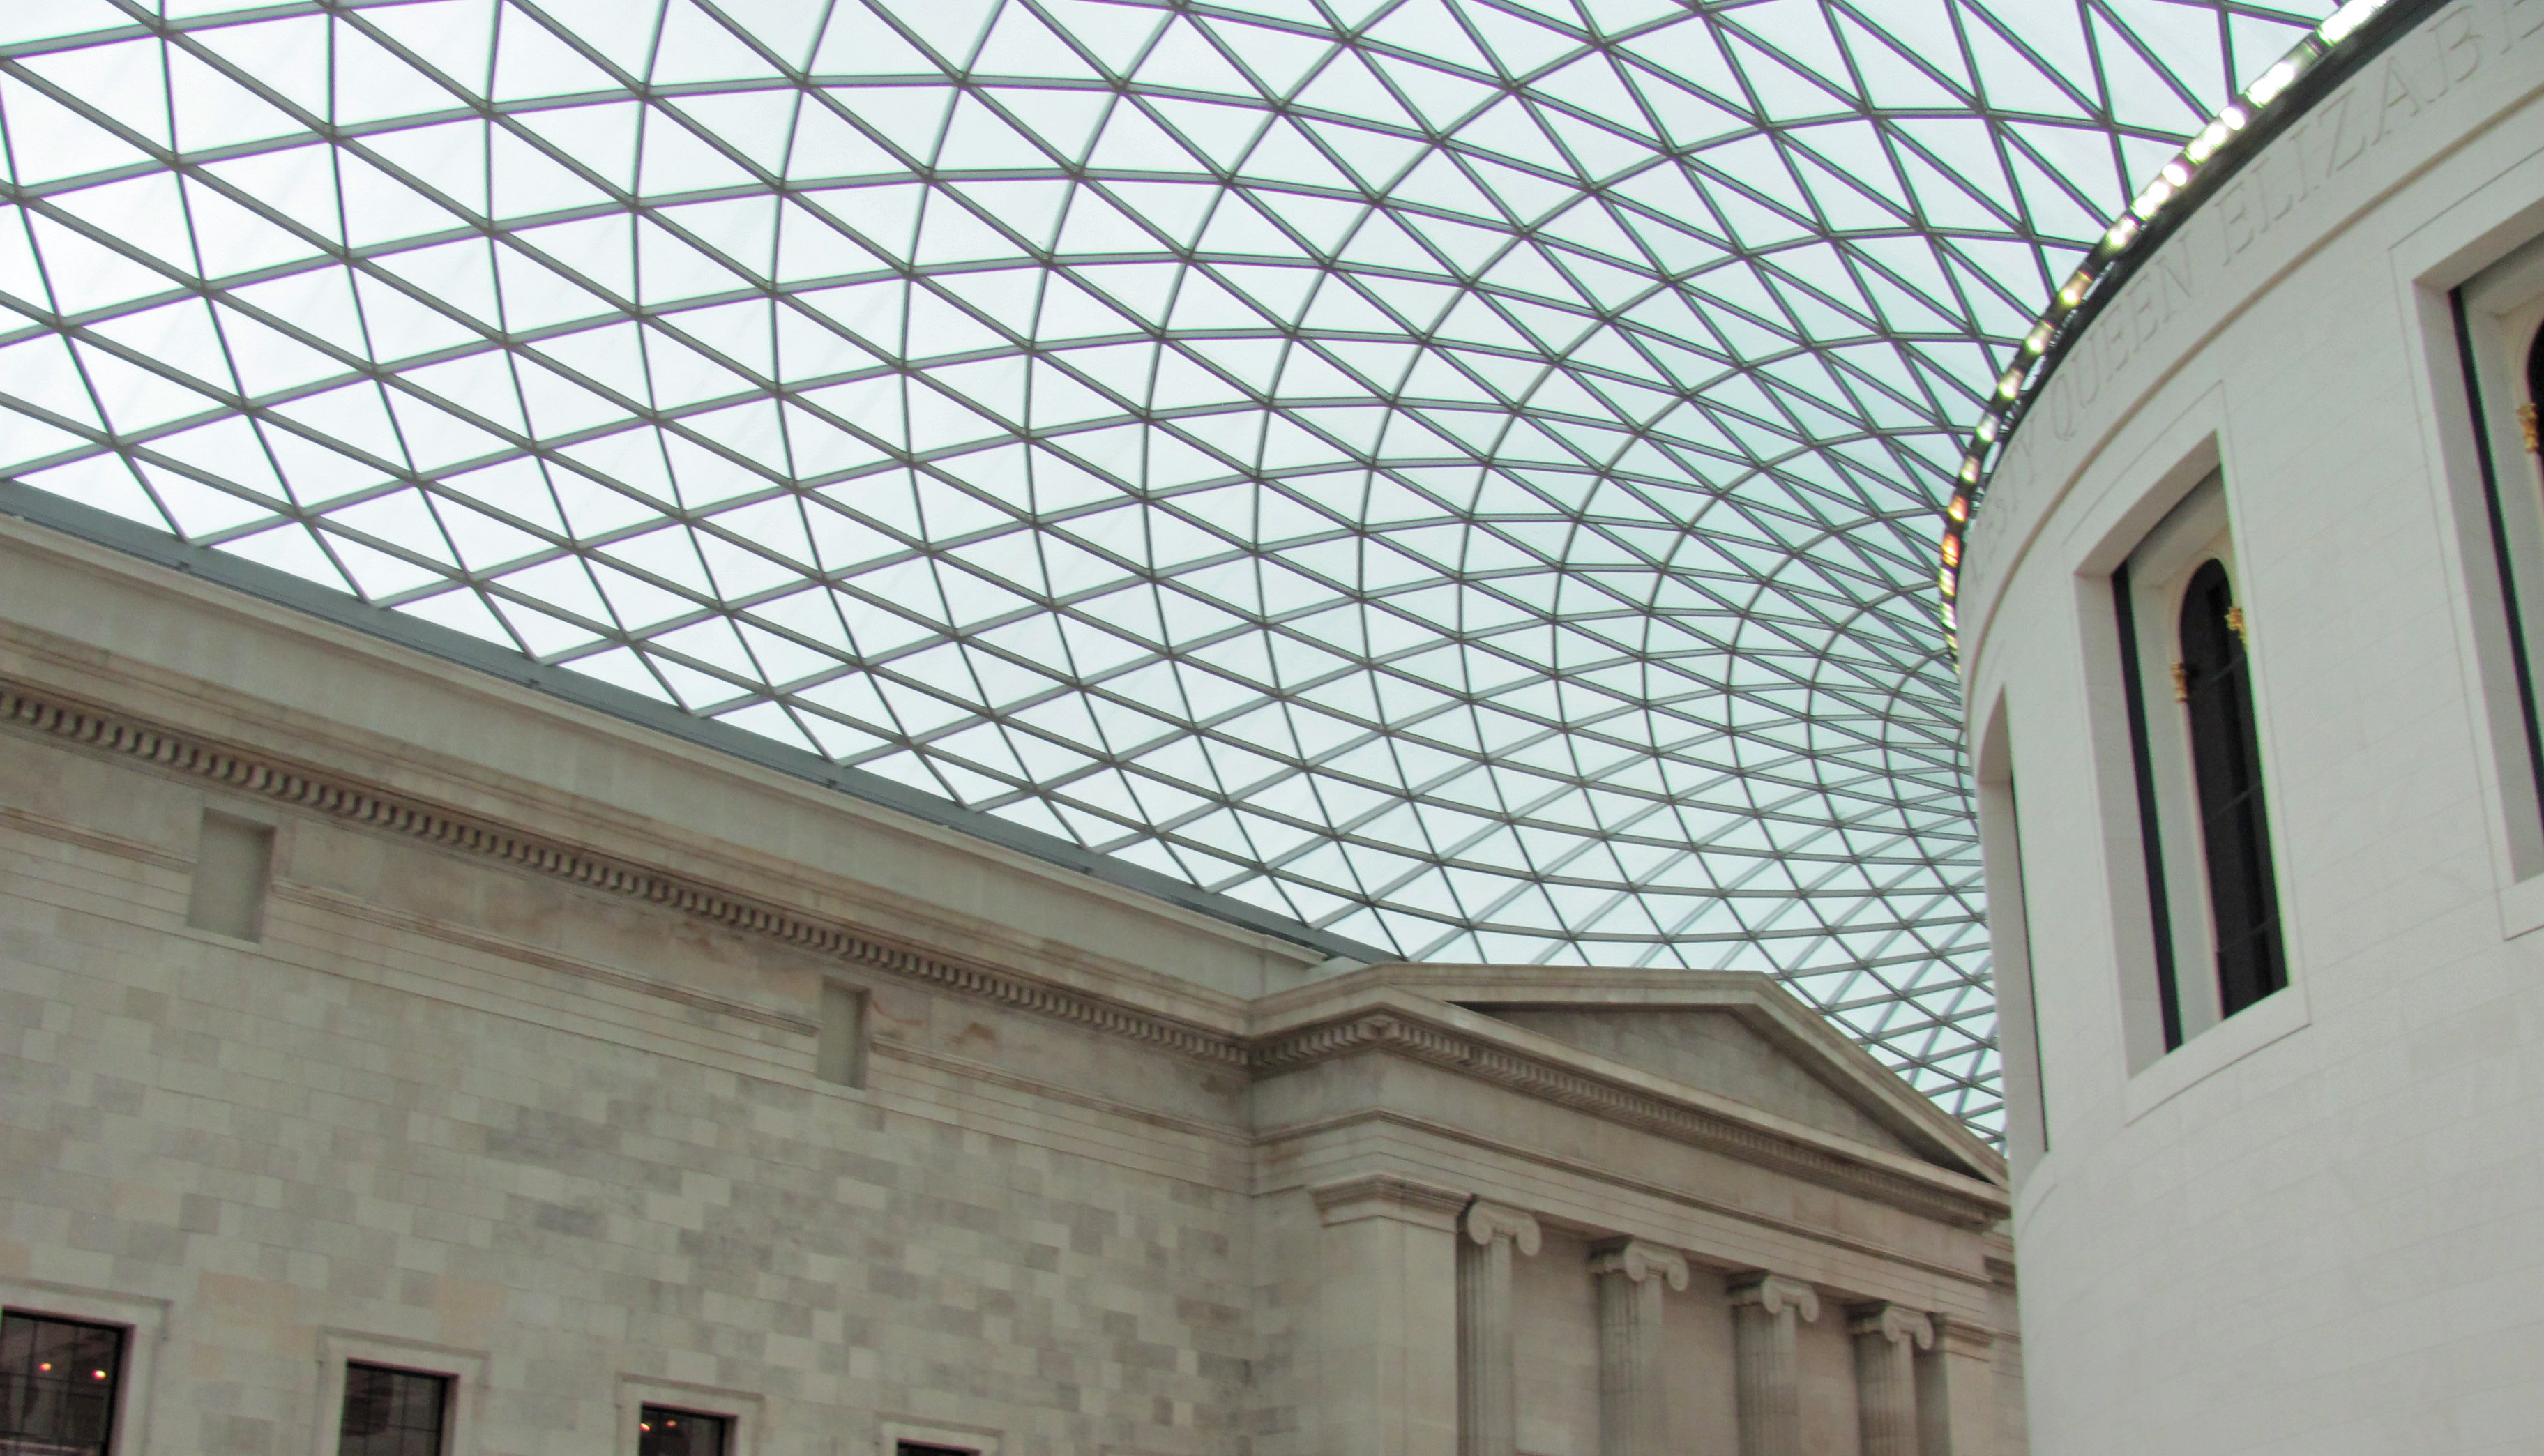 Photos – The British Museum